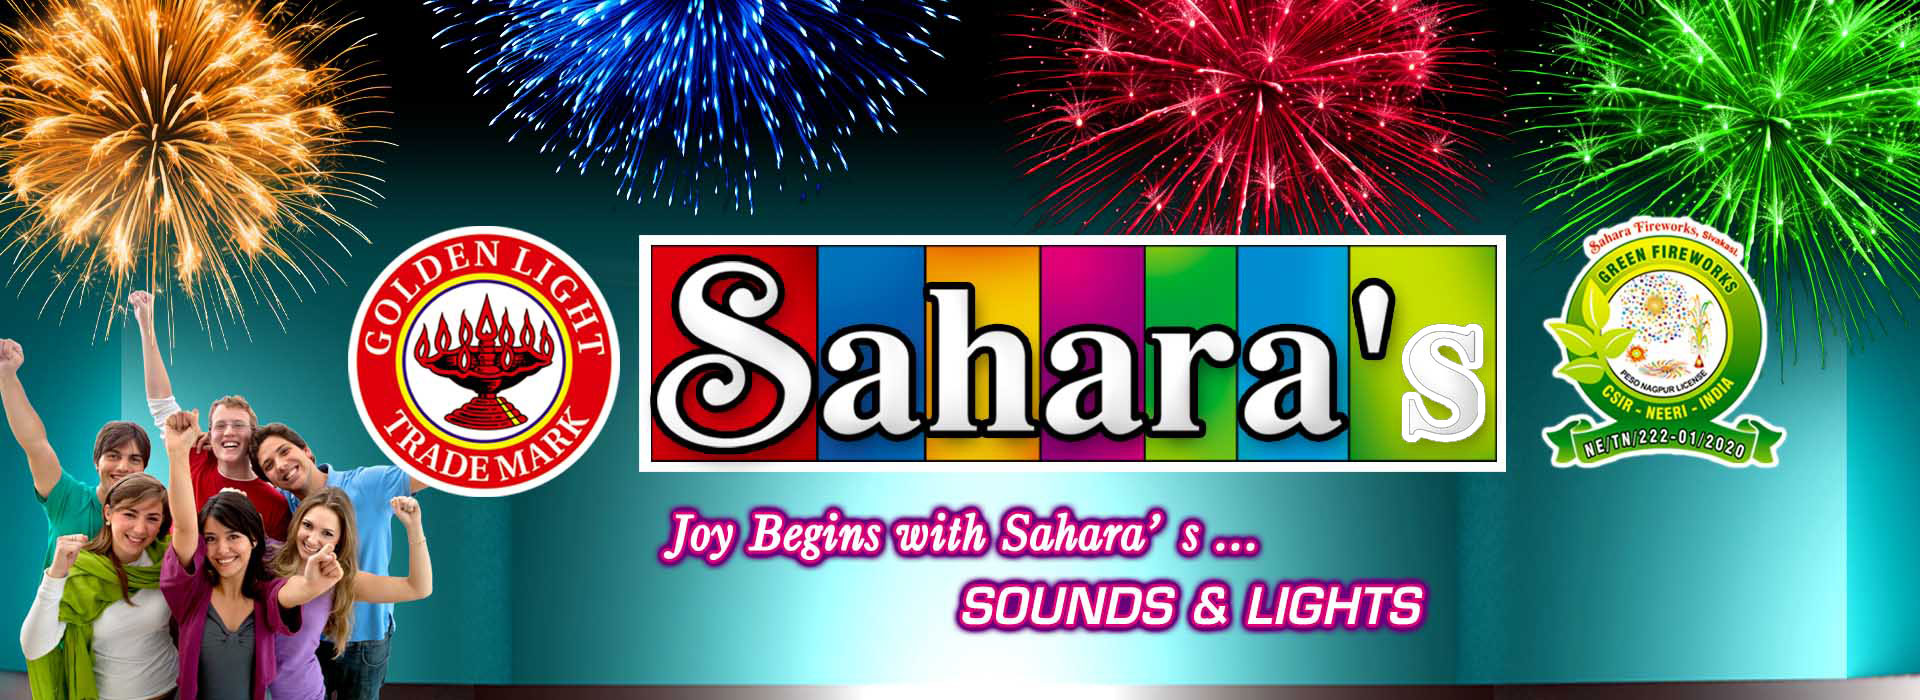 Sahara Fireworks